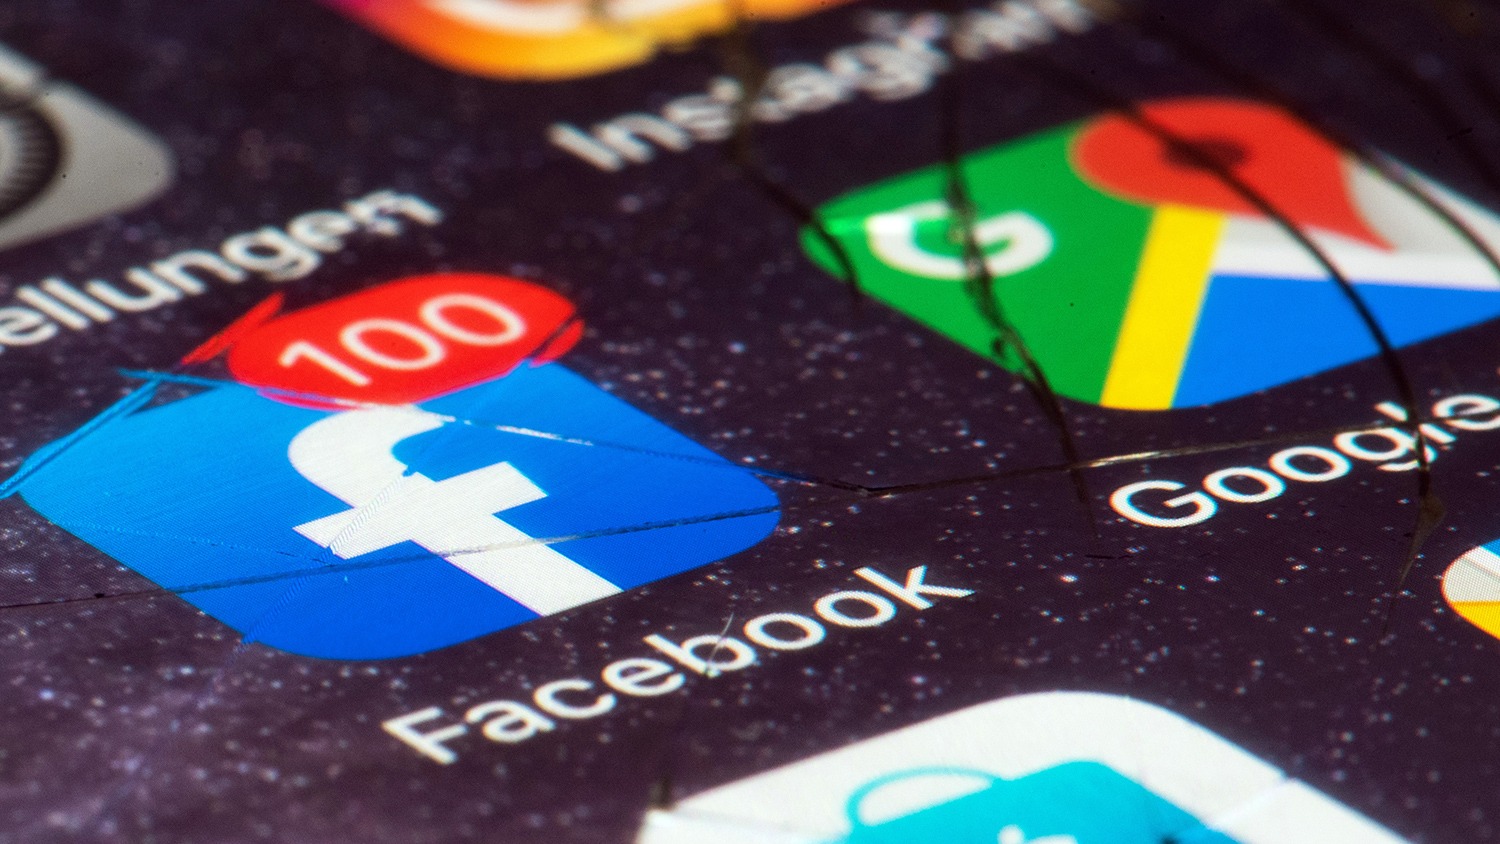 Розсилка вірусів, перехоплення SMS: як витік в Facebook відіб’ється на українцях